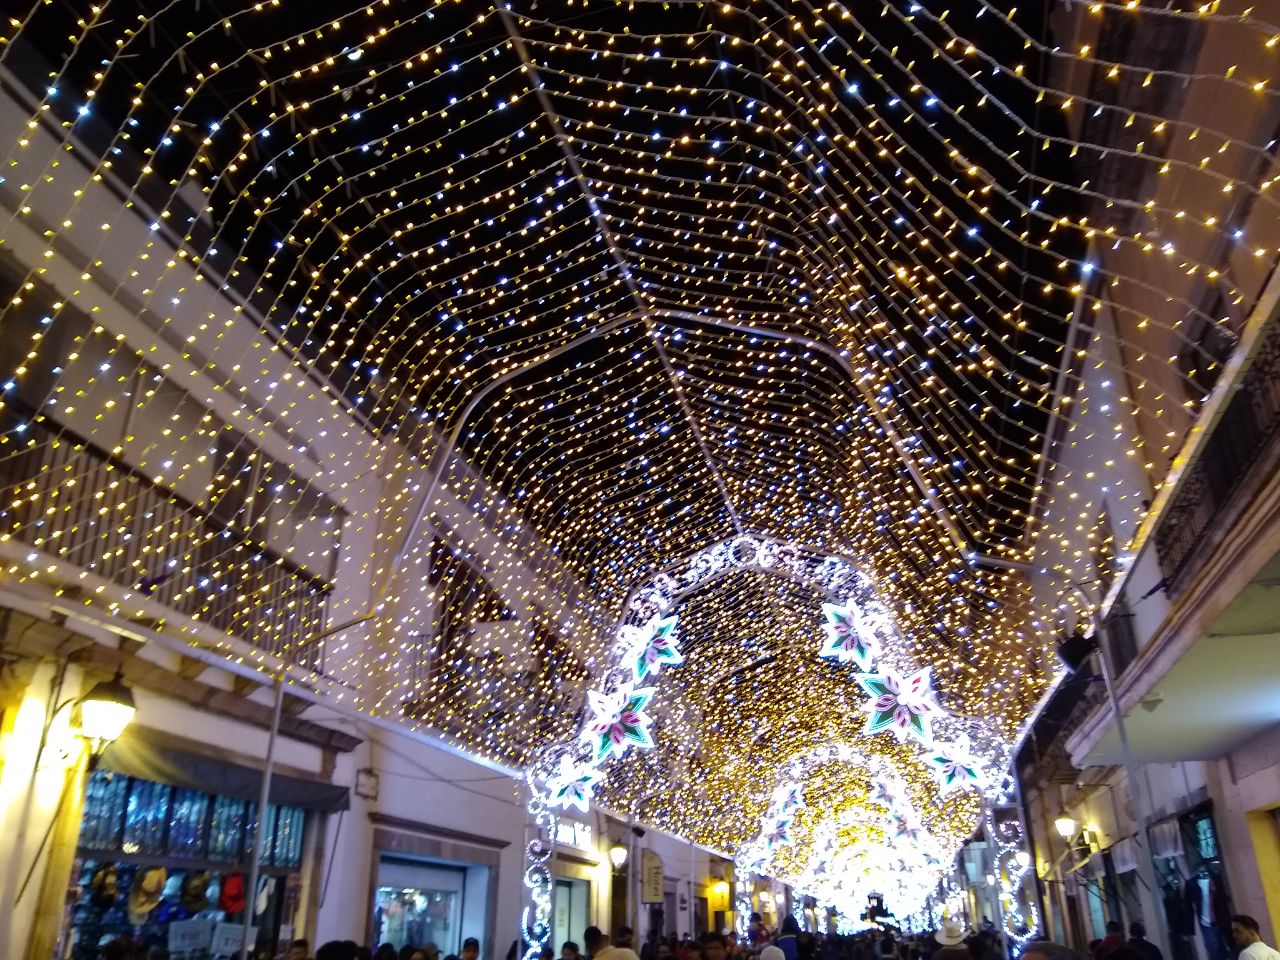  Encienden luces navideñas en centro histórico de Querétaro